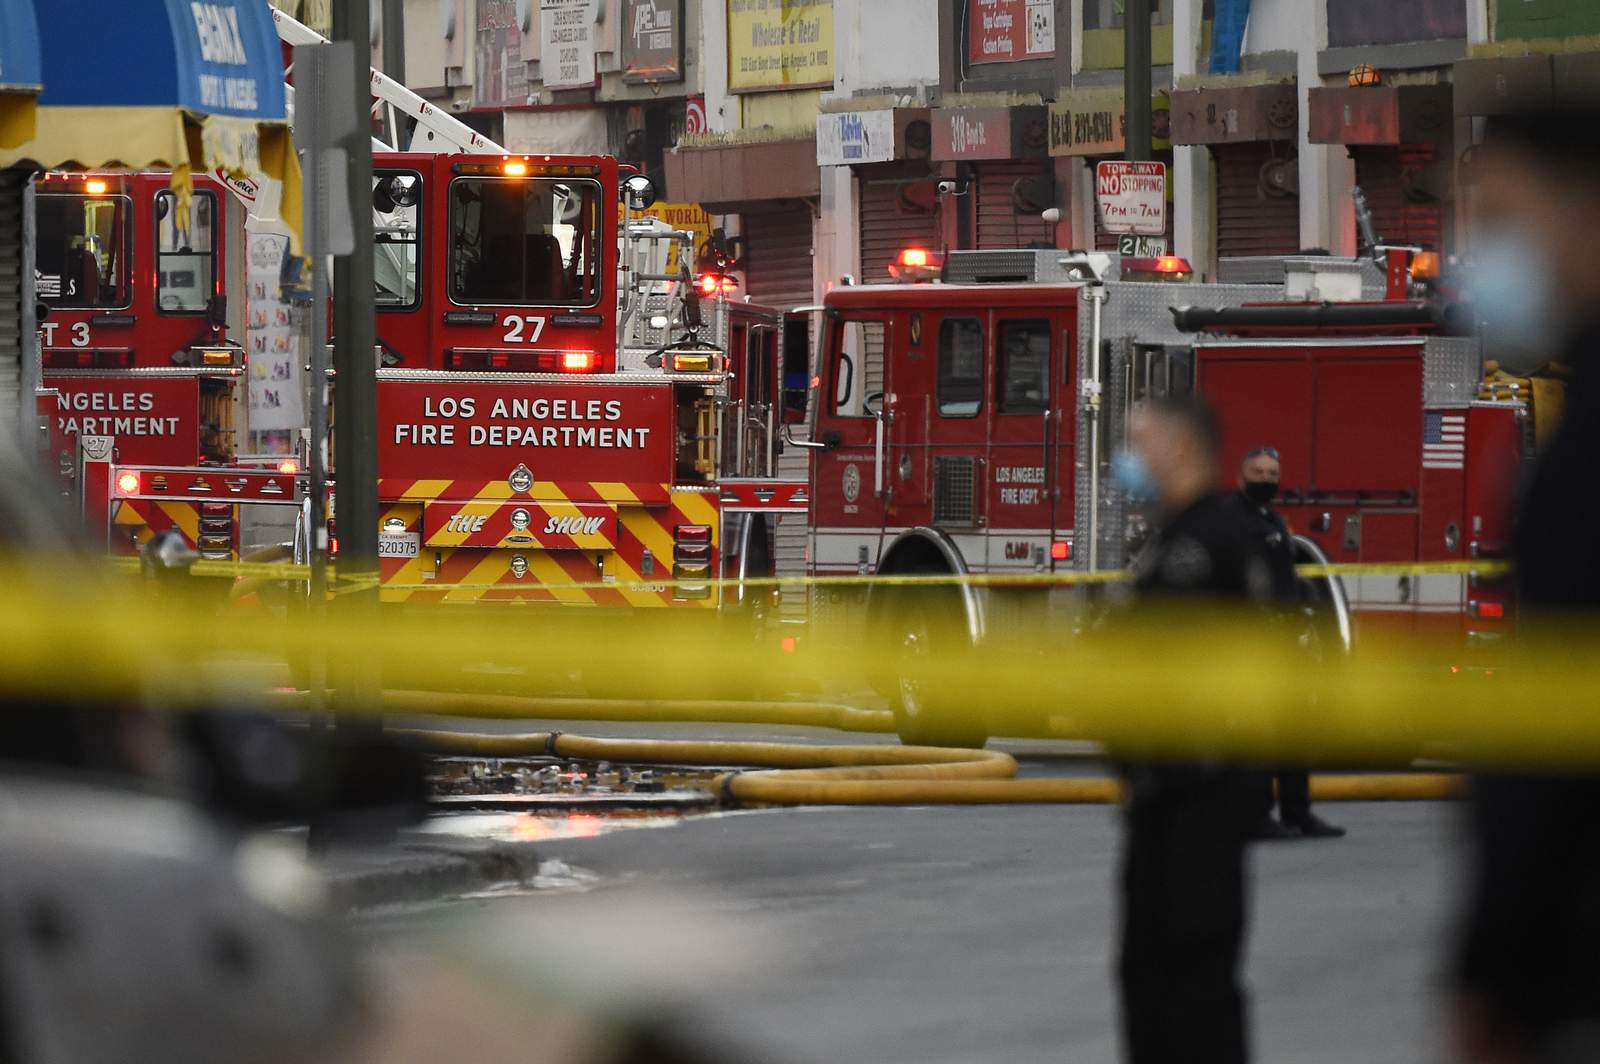 Investigators open criminal probe into LA explosion